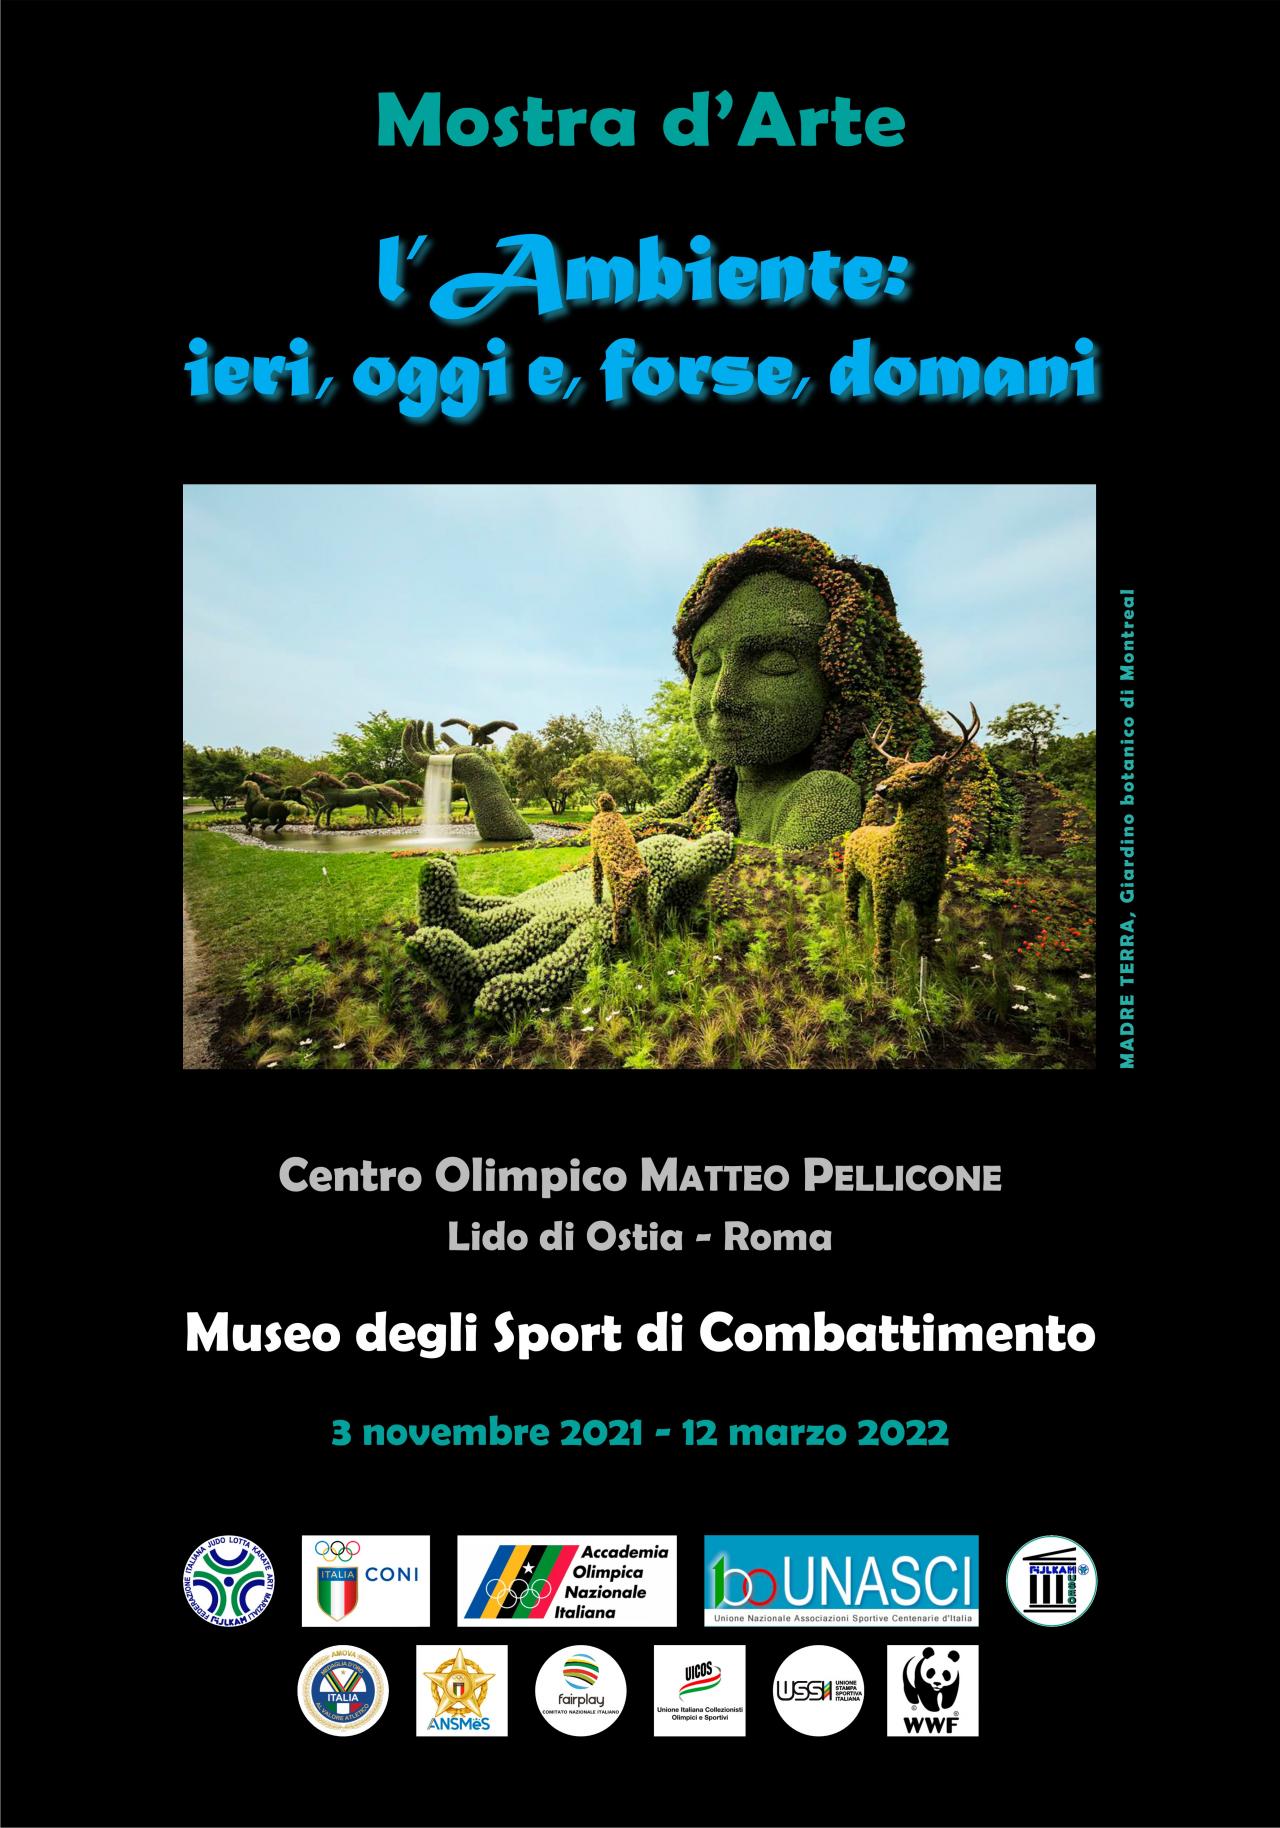 images/documenti/large/Mostra_darte_sullAmbiente_-_Manifesto.jpg